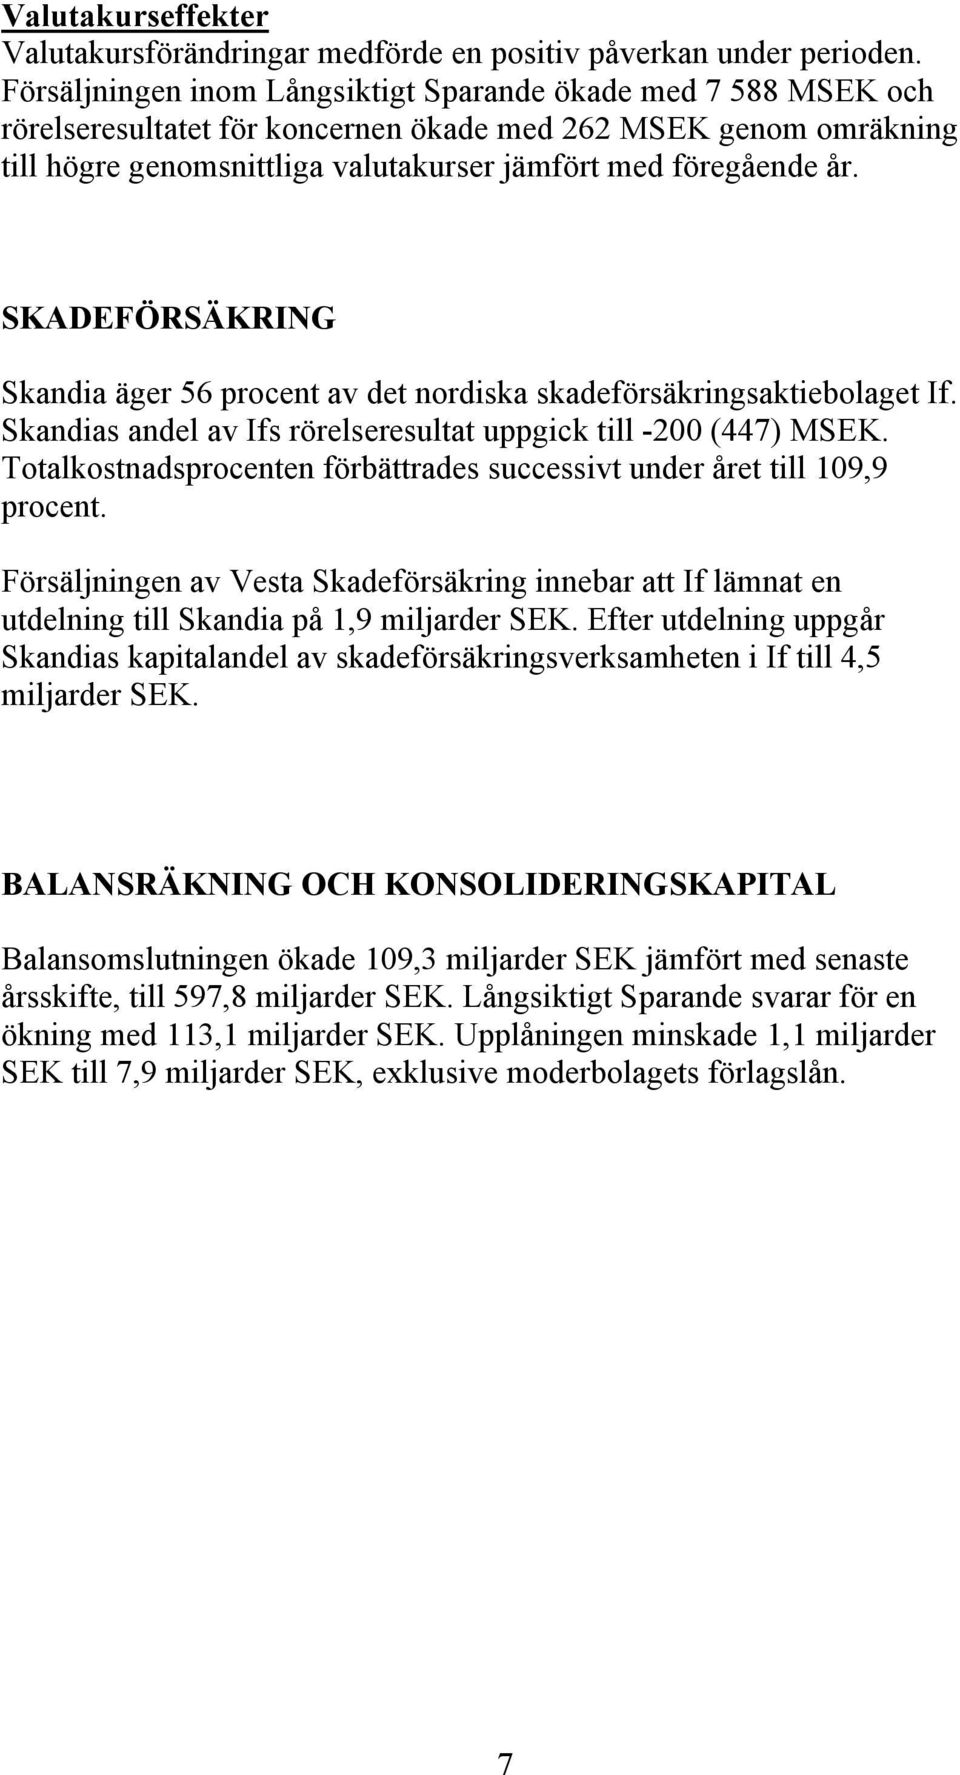 SKADEFÖRSÄKRING Skandia äger 56 procent av det nordiska skadeförsäkringsaktiebolaget If. Skandias andel av Ifs rörelseresultat uppgick till -200 (447) MSEK.